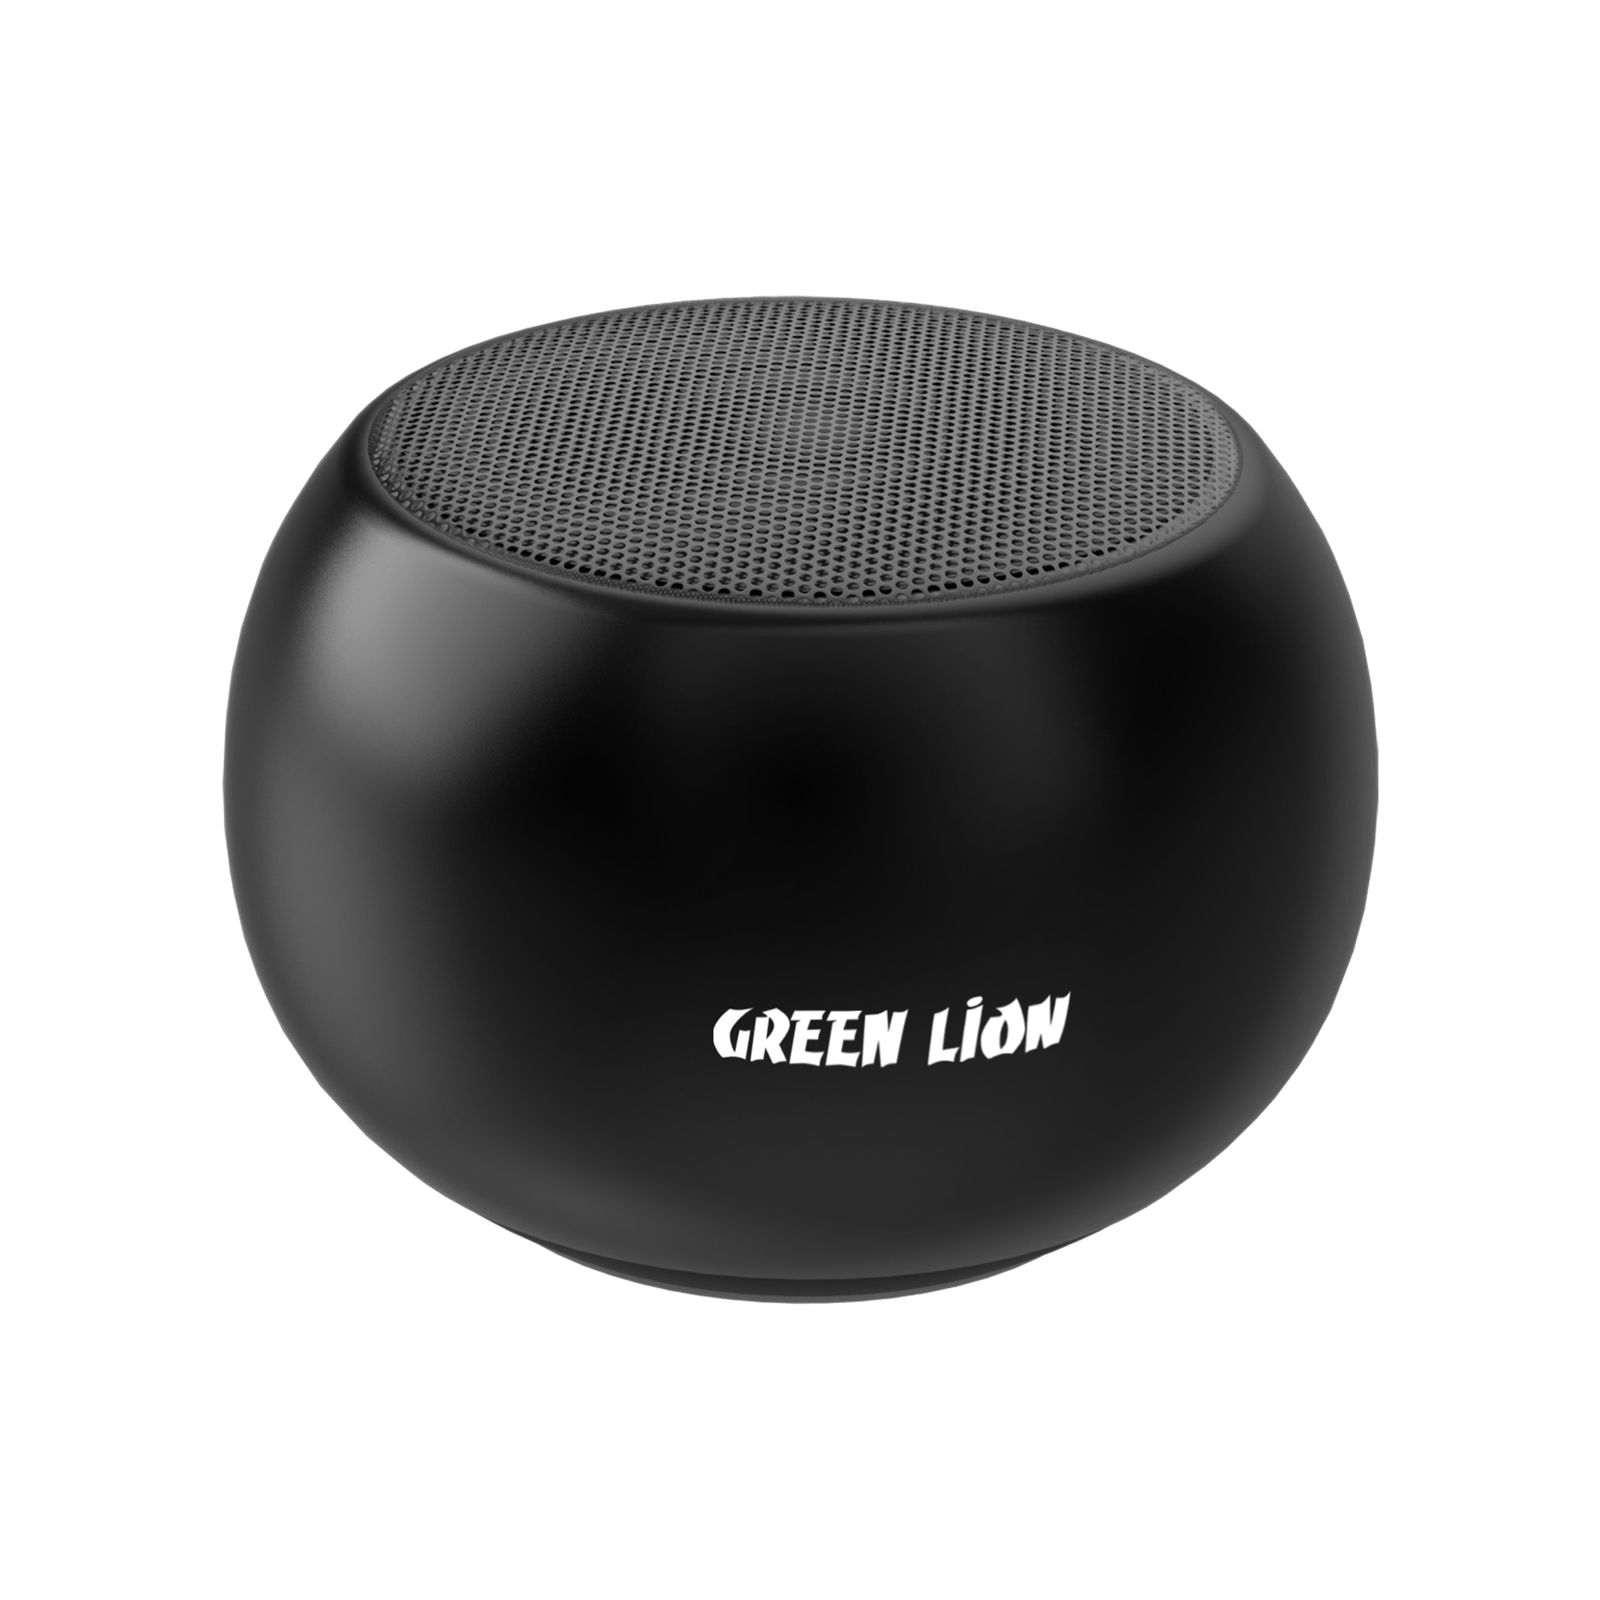 سبيكر بلوتوث موديل M3 الصغير لون أسود | Green Soundcore Portable Bluetooth Speaker